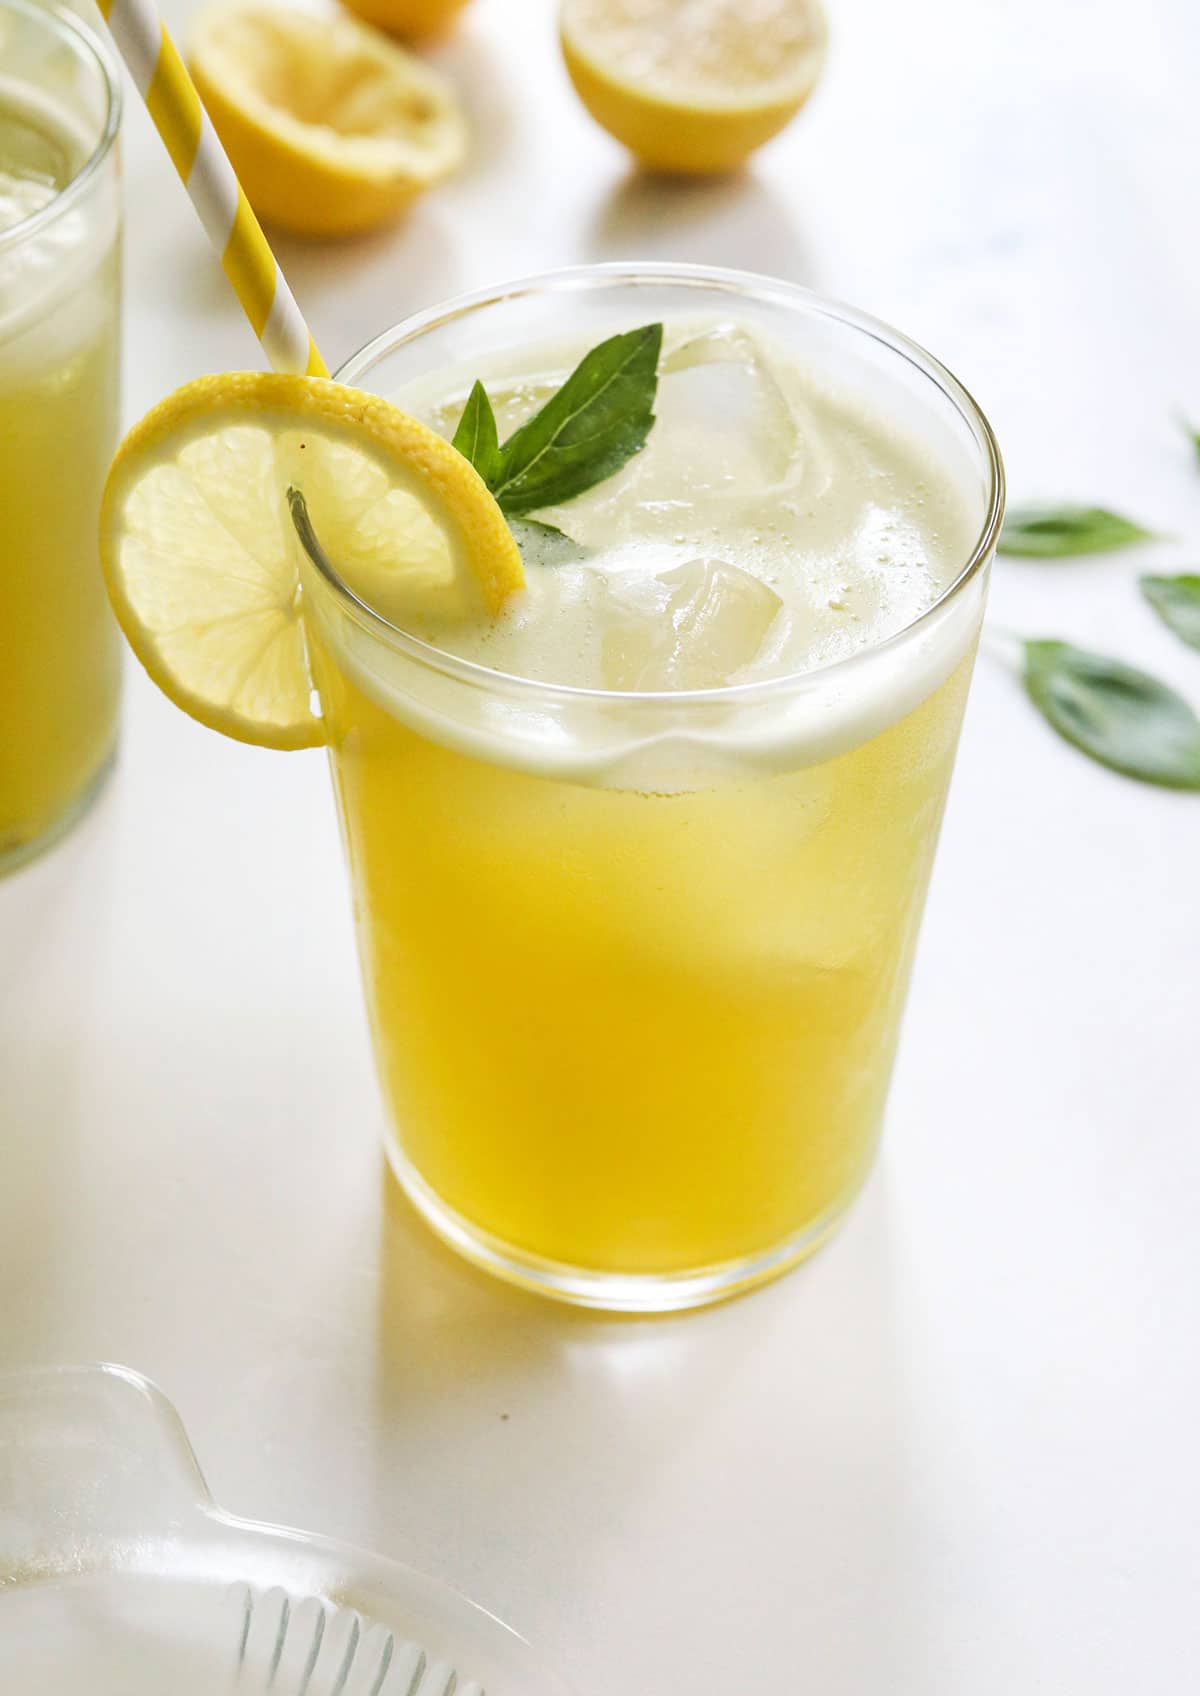 basil lemonade over ice in glass